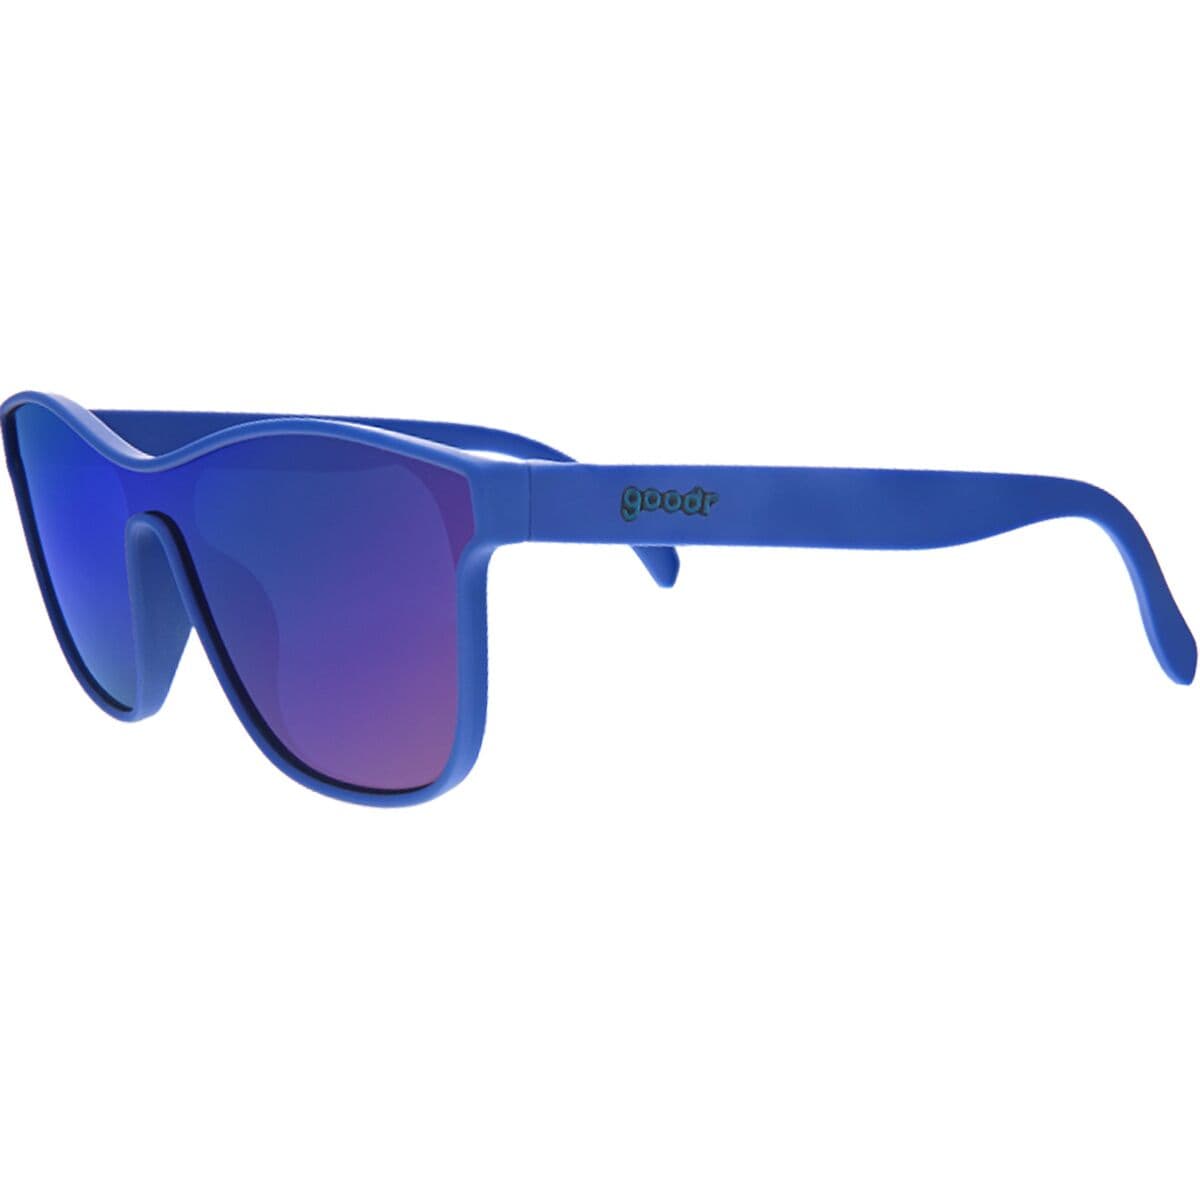 Поляризованные солнцезащитные очки VRG Goodr